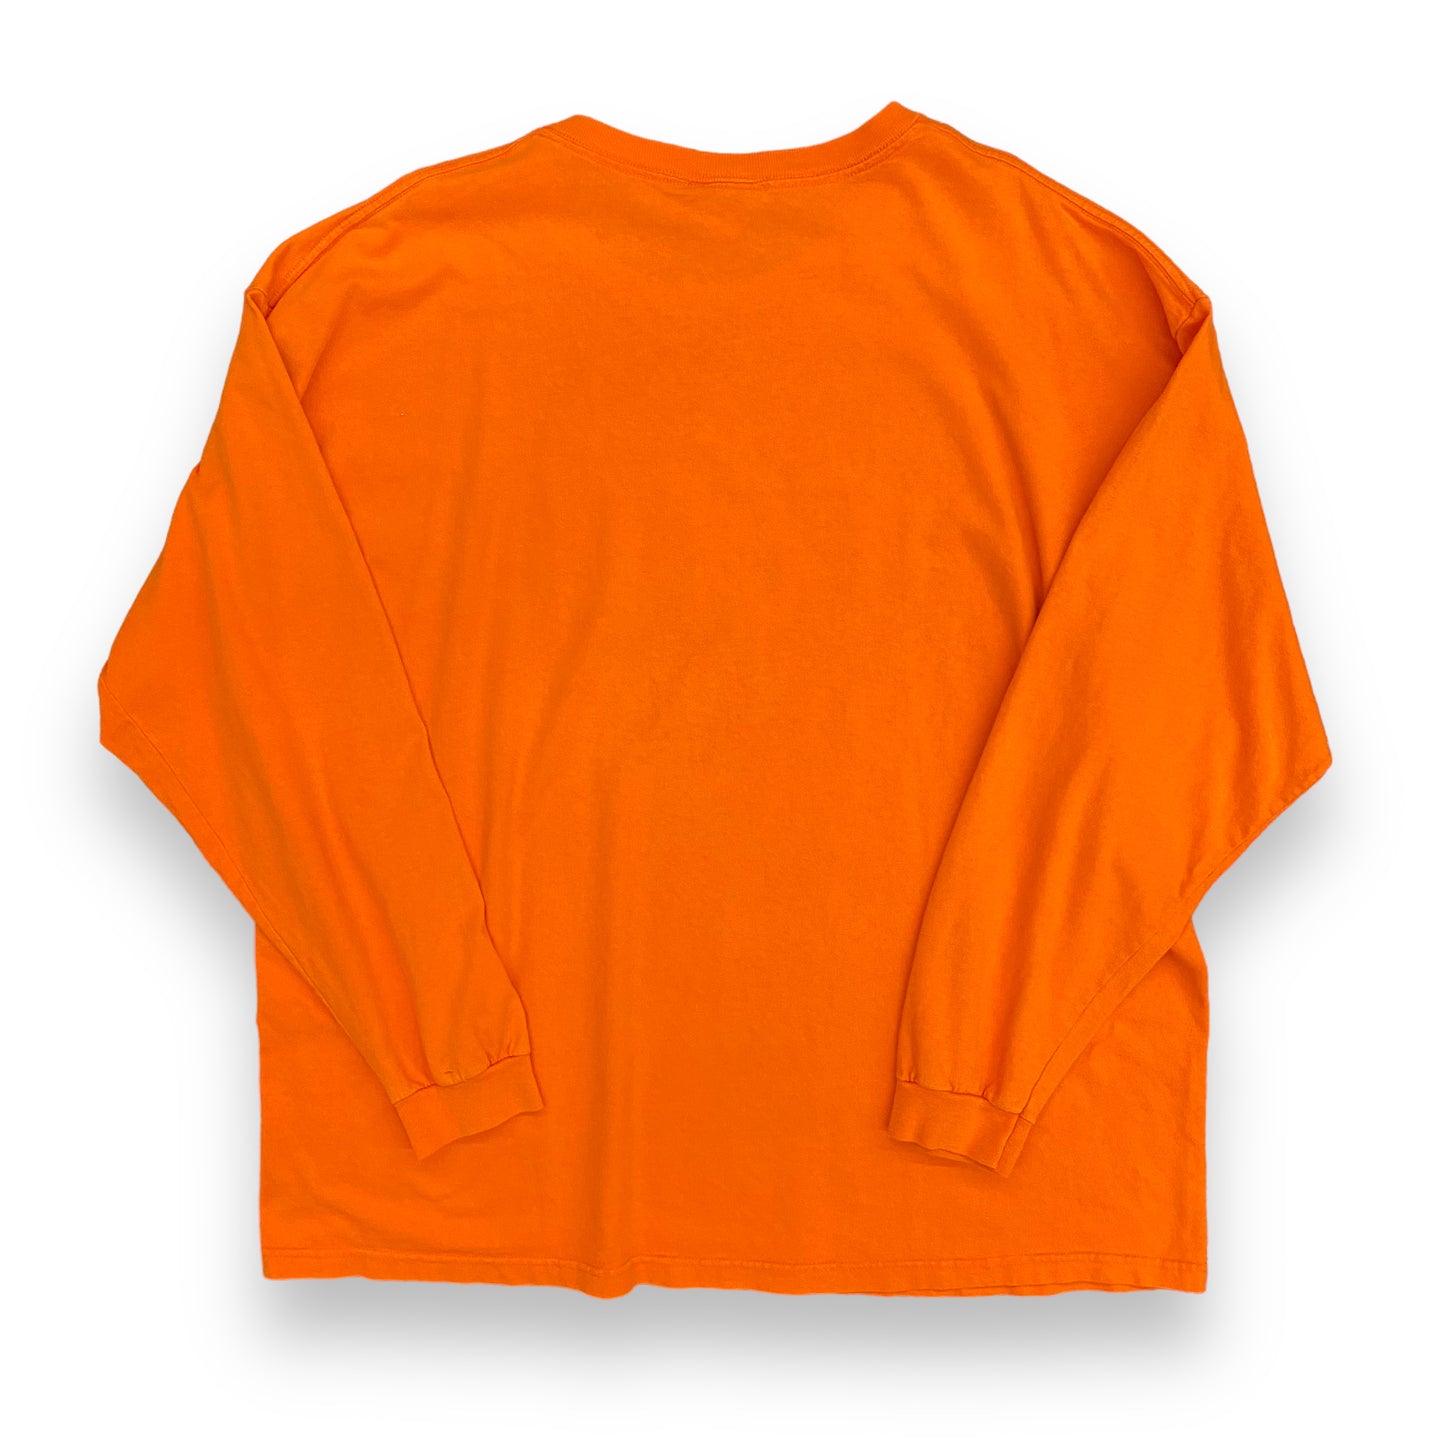 Vintage Oversized ESPN Zone Orange Long Sleeve Tee - Size XL